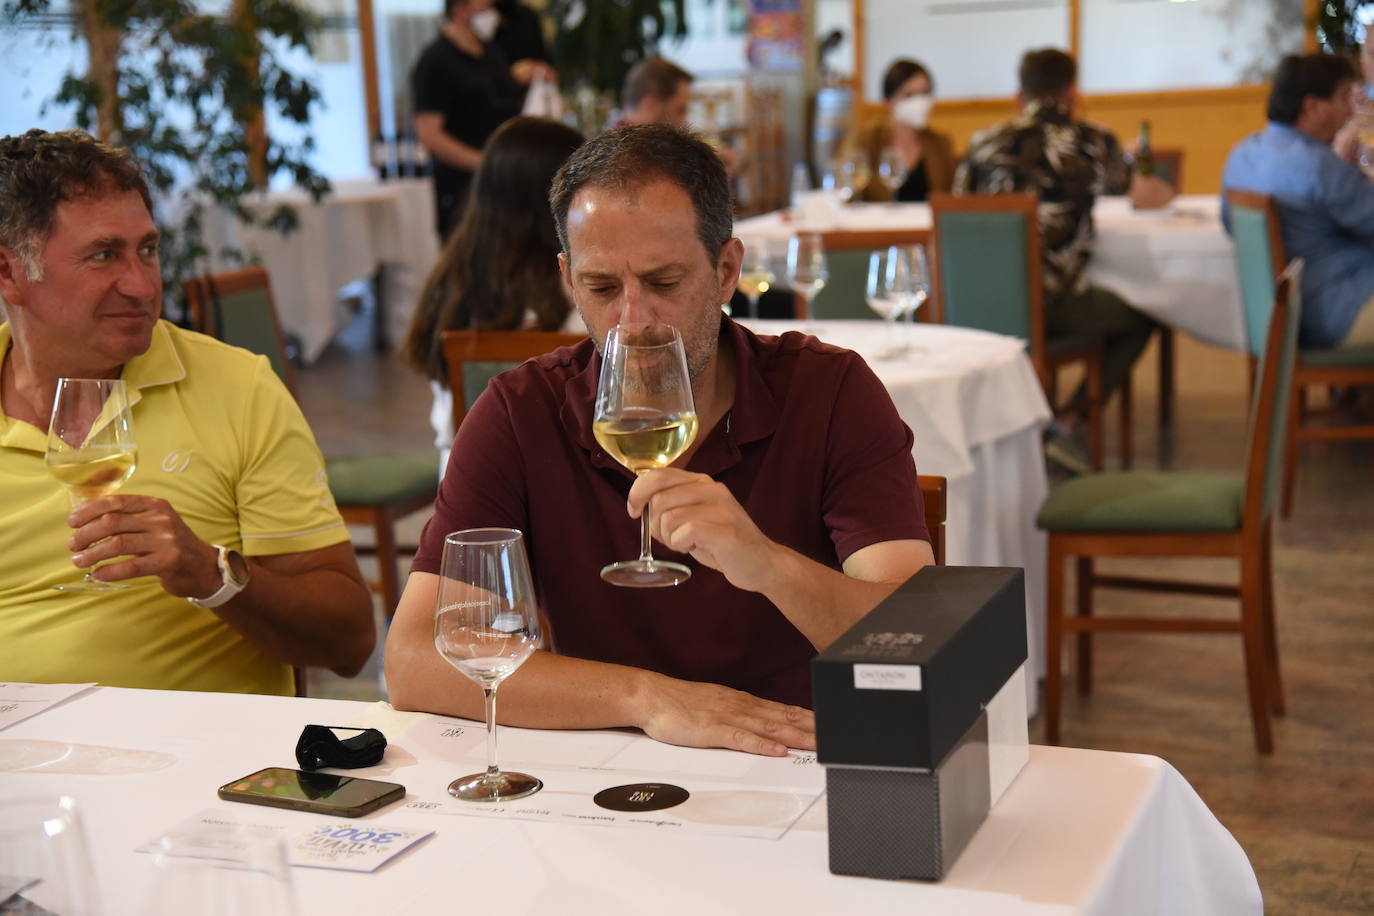 Tras la jornada de juego, los participantes en el torneo Bodegas Ontañón de la Liga de Golf y Vino disfrutaron de los vinos de la bodega en El Campo de Logroño.